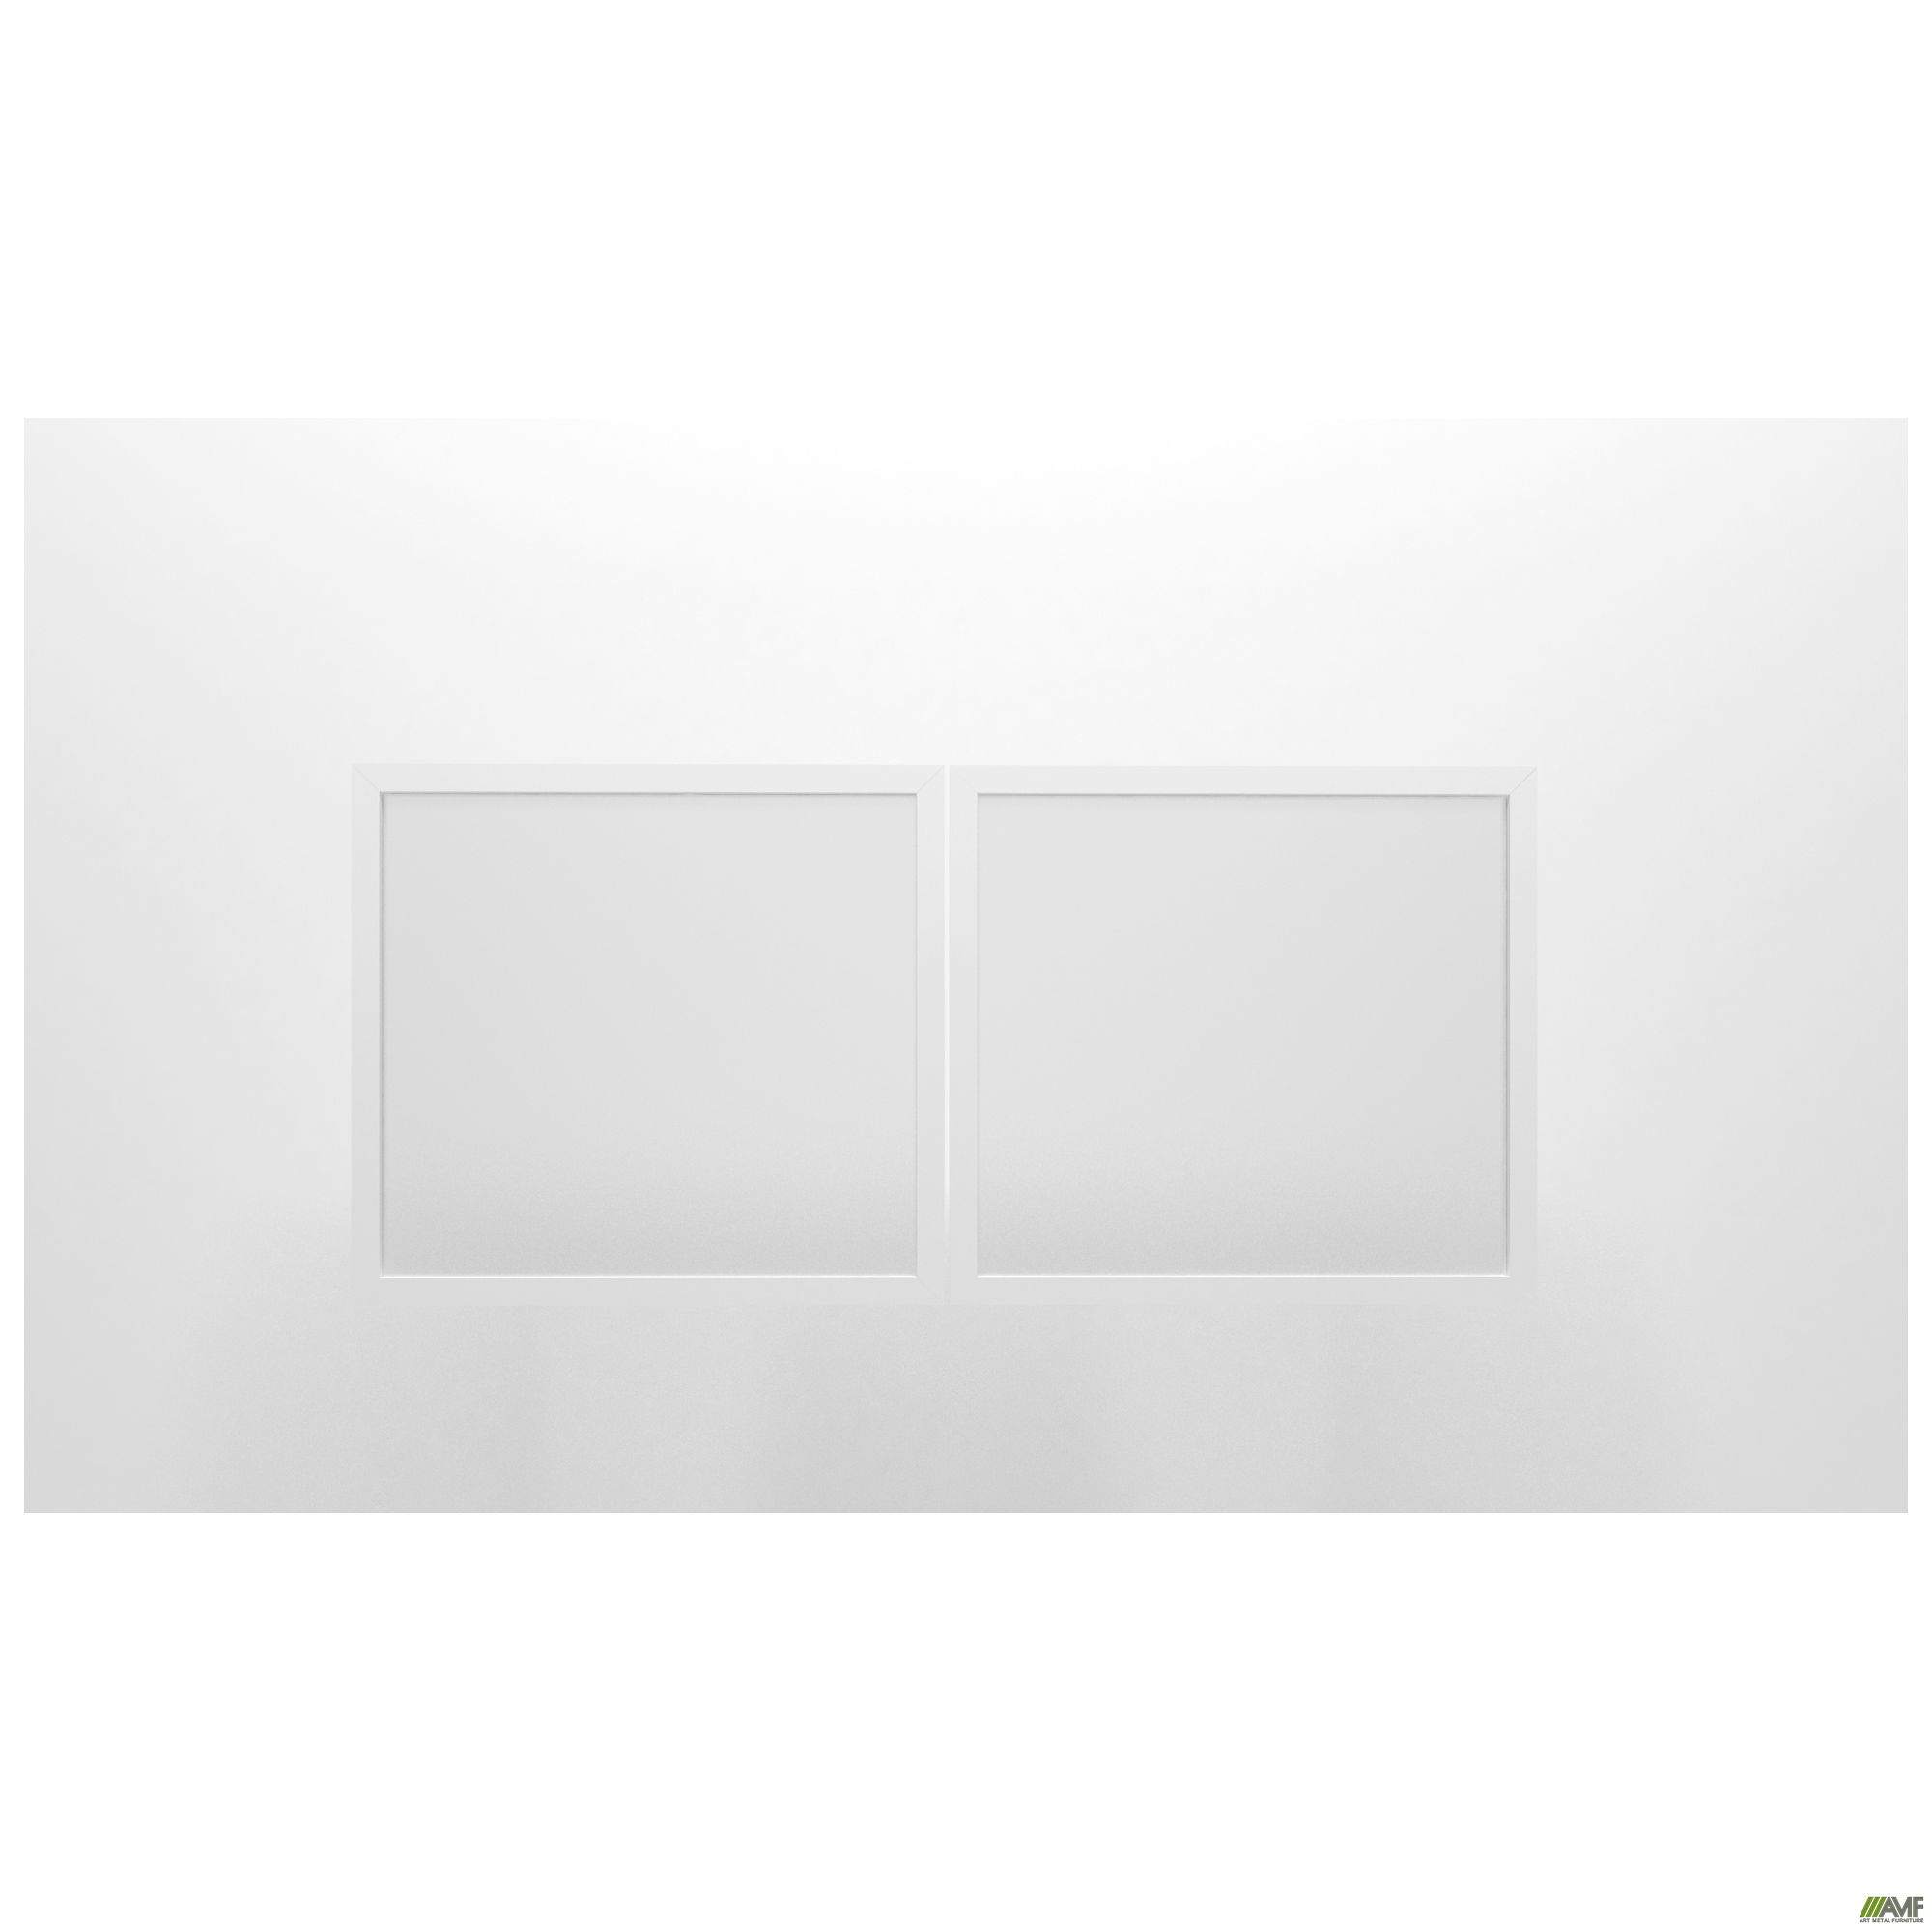 Фото 2 - Фасад стекло Delta DL-713L+R (852х391х20мм) профиль белый 